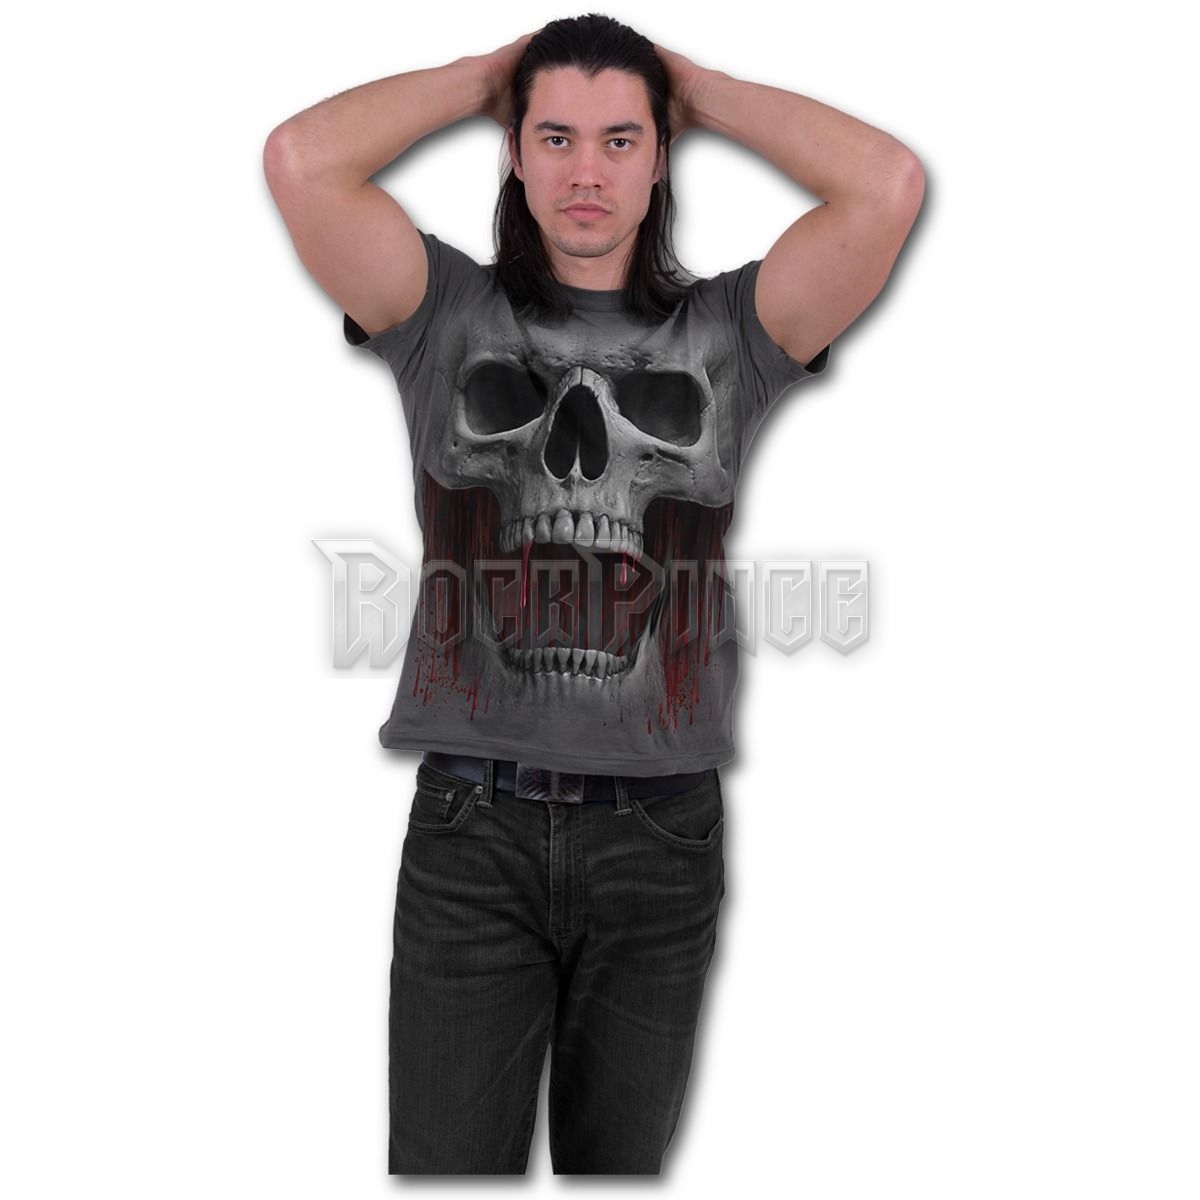 DEATH ROAR - T-Shirt Charcoal (Plain) - T151M115